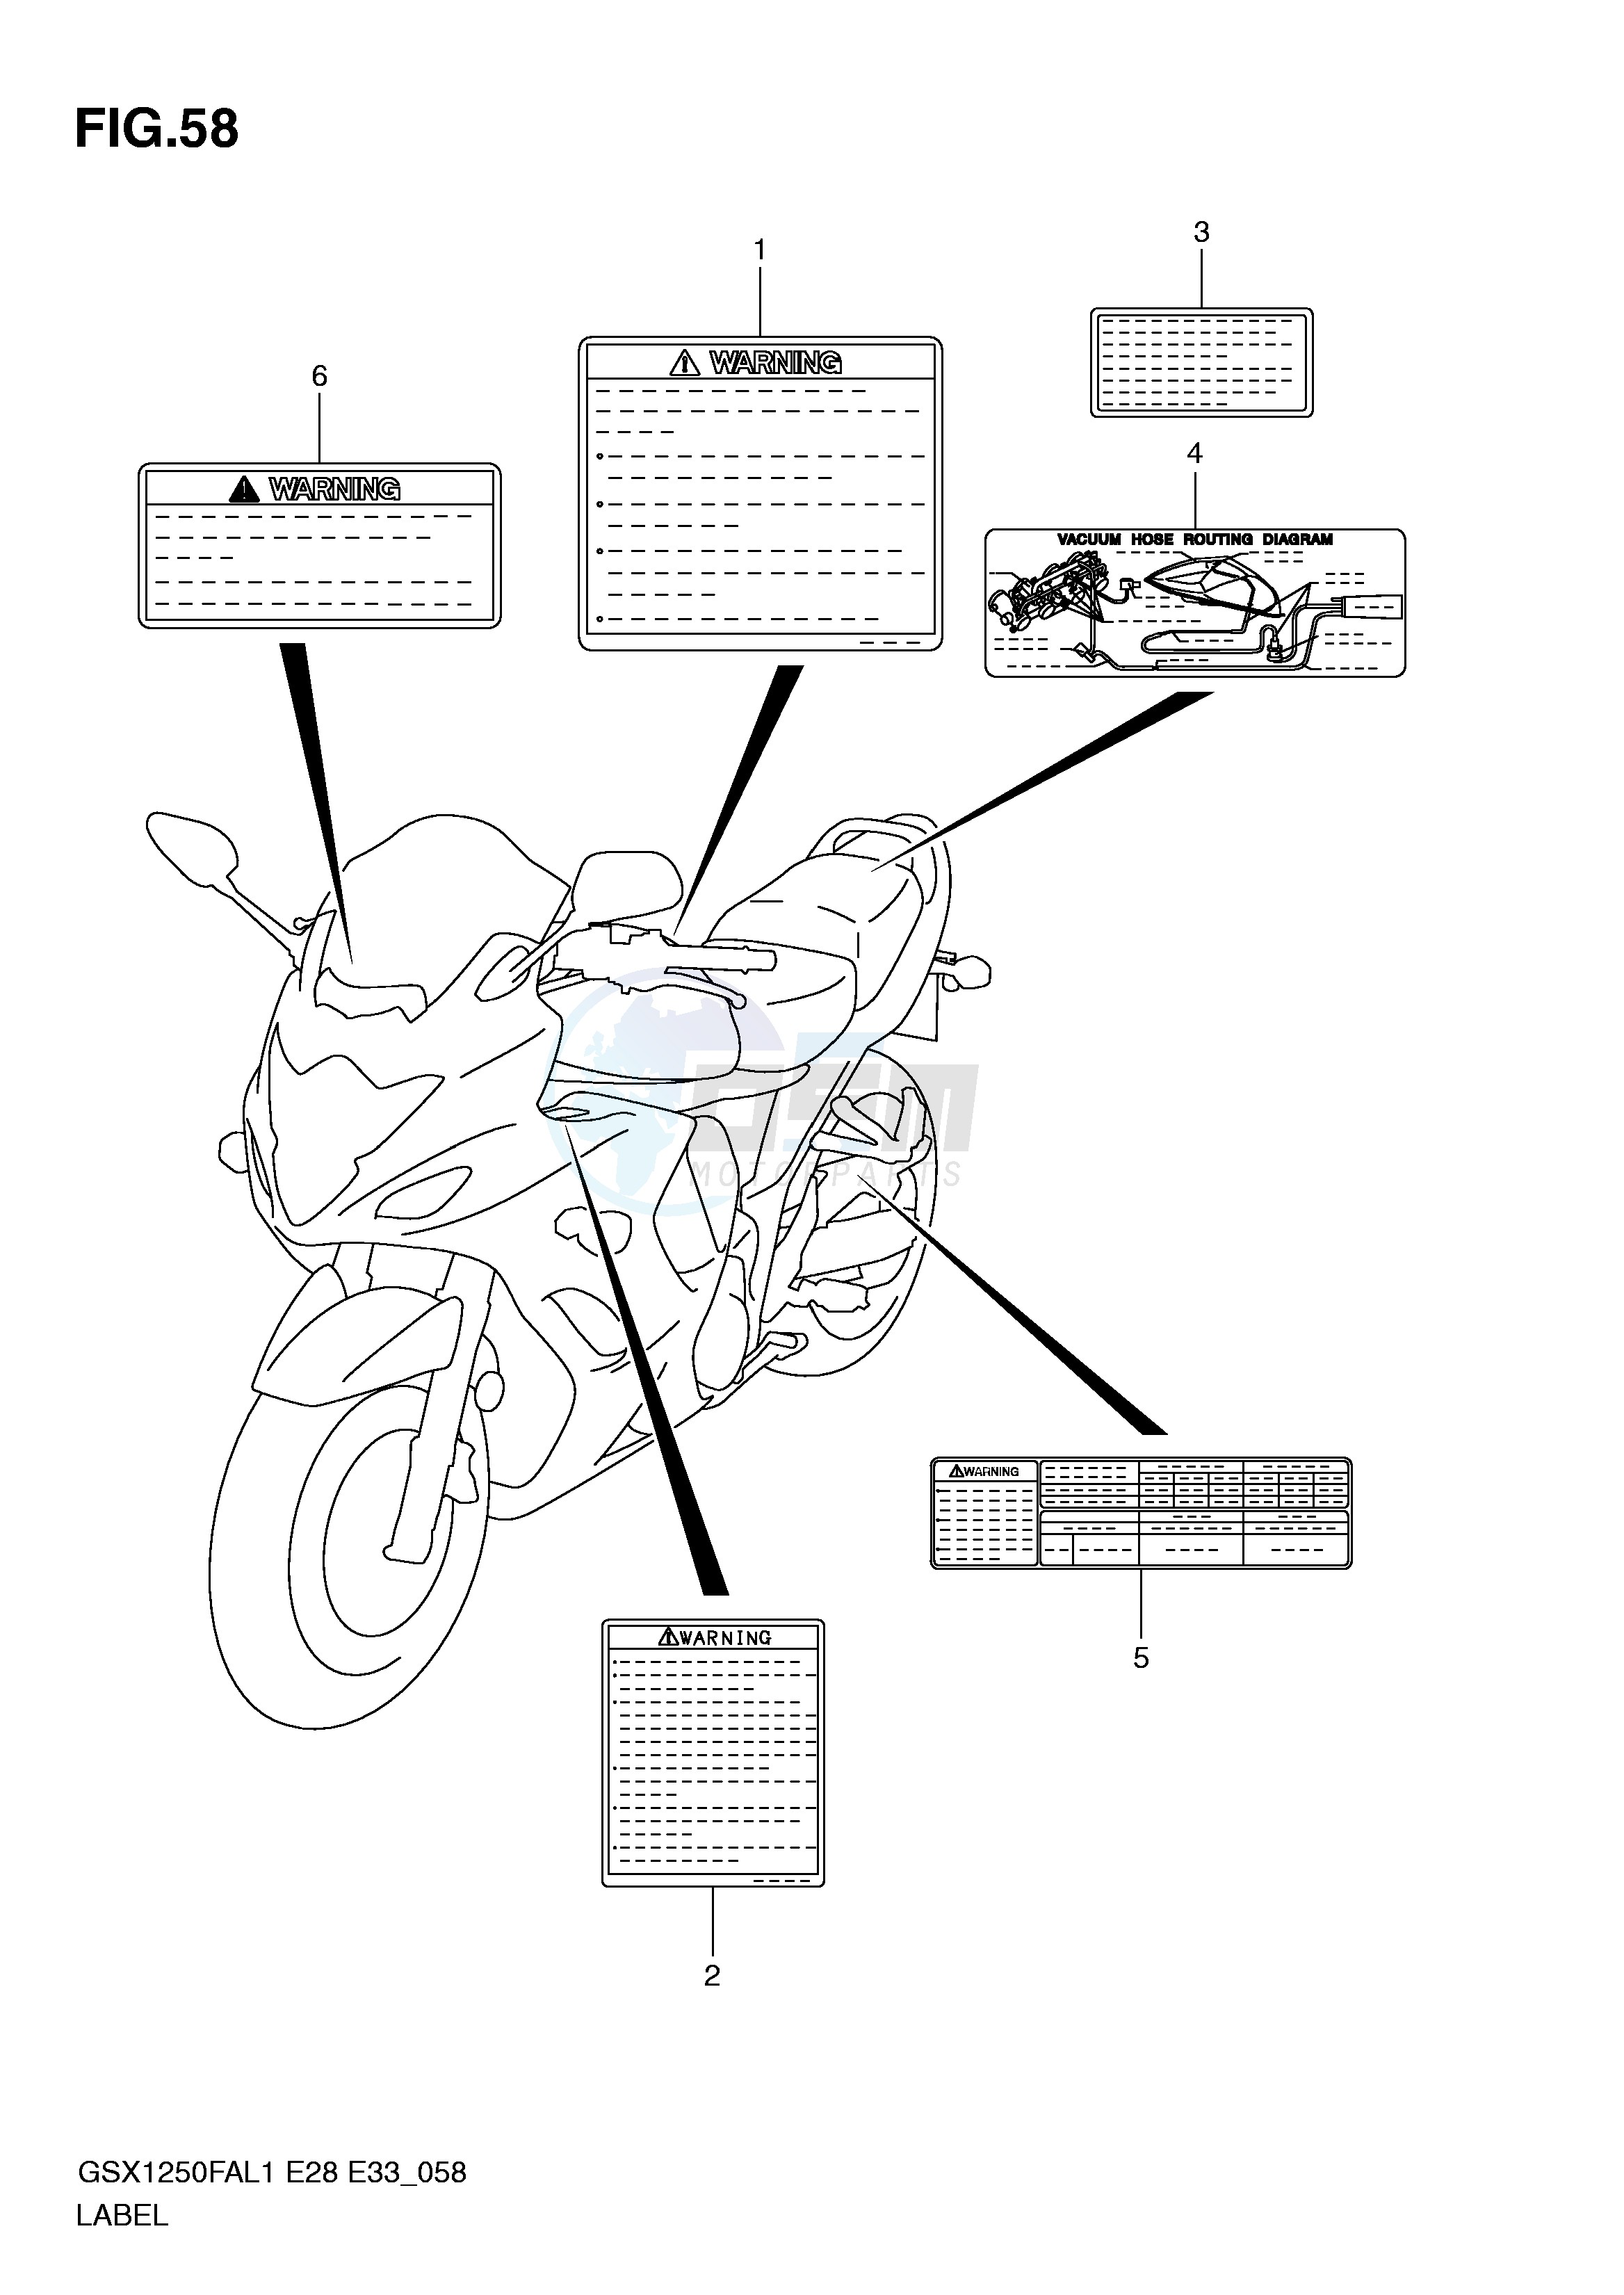 LABEL (GSX1250FAL1 E33) blueprint